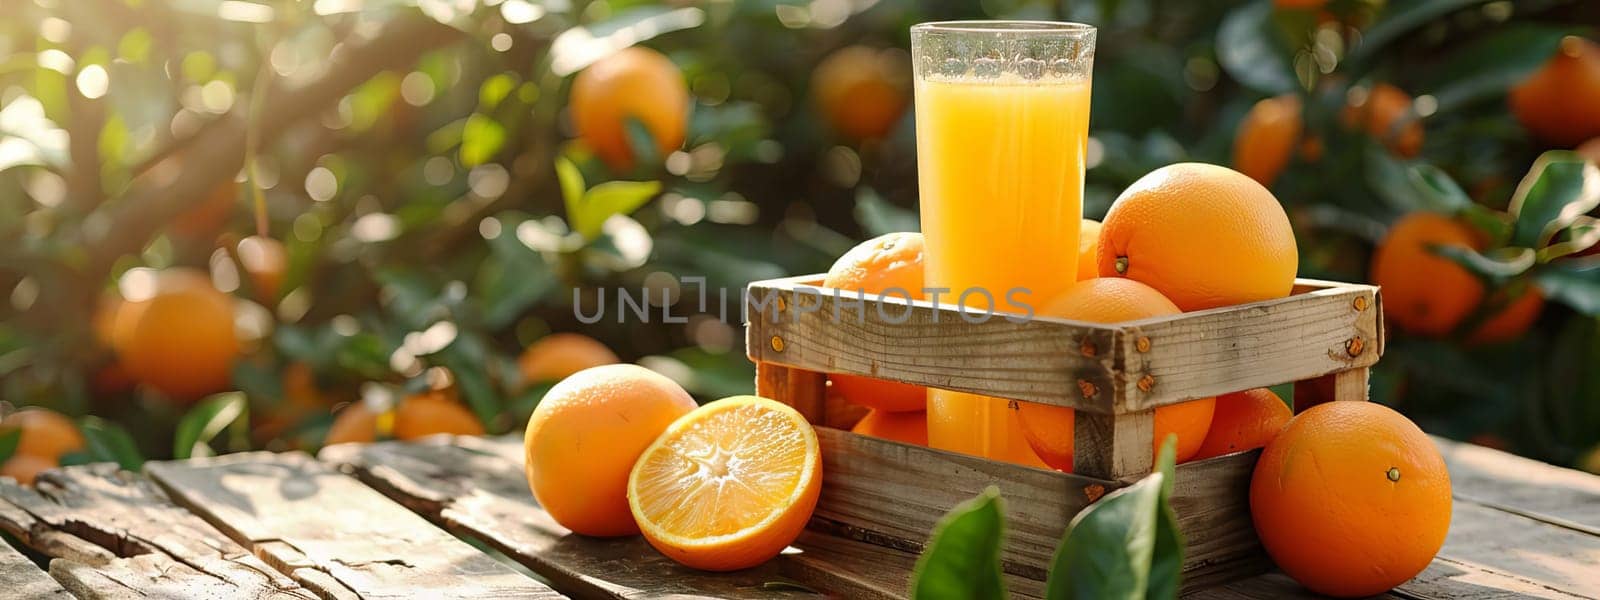 fresh orange juice in a glass, drink Generative AI,